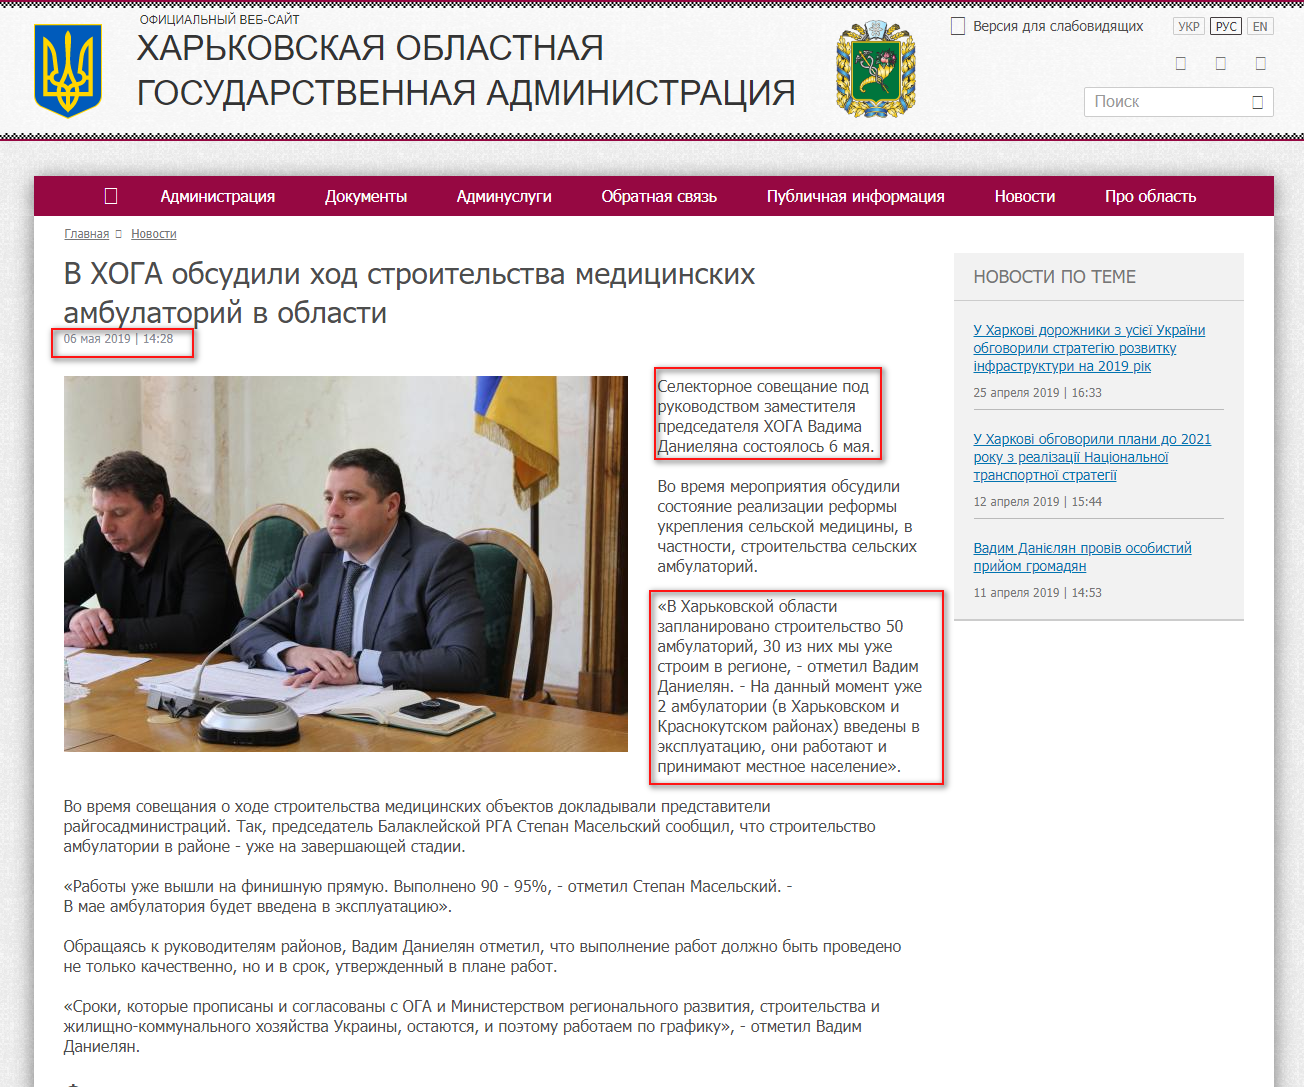 http://kharkivoda.gov.ua/ru/news/98651